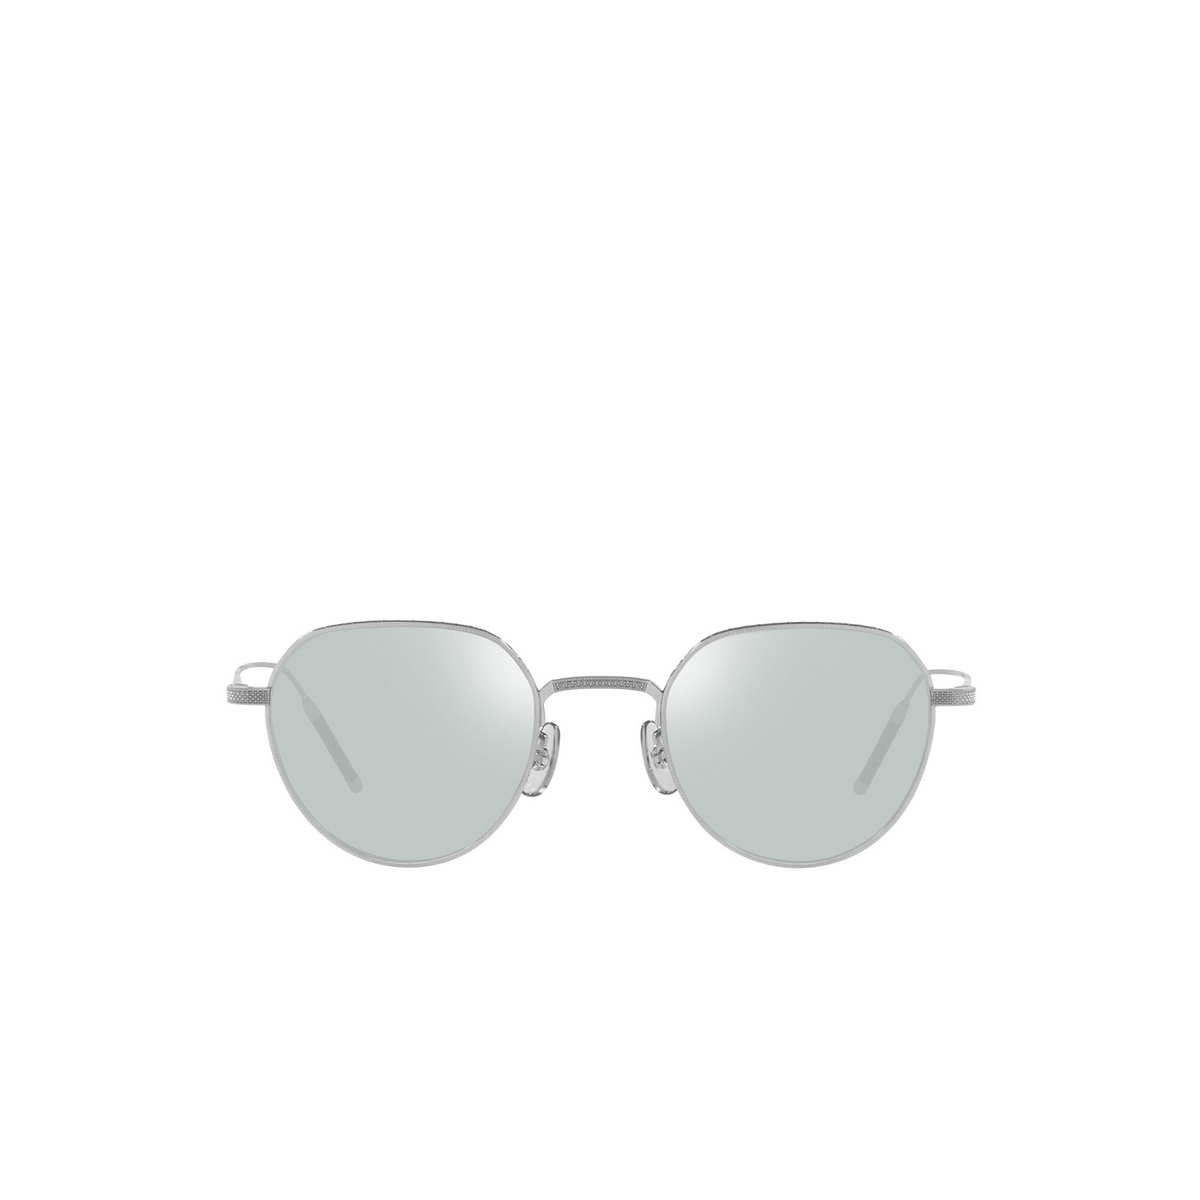 Oliver Peoples TK-4 Eyeglasses 5254 Brushed Silver - front view